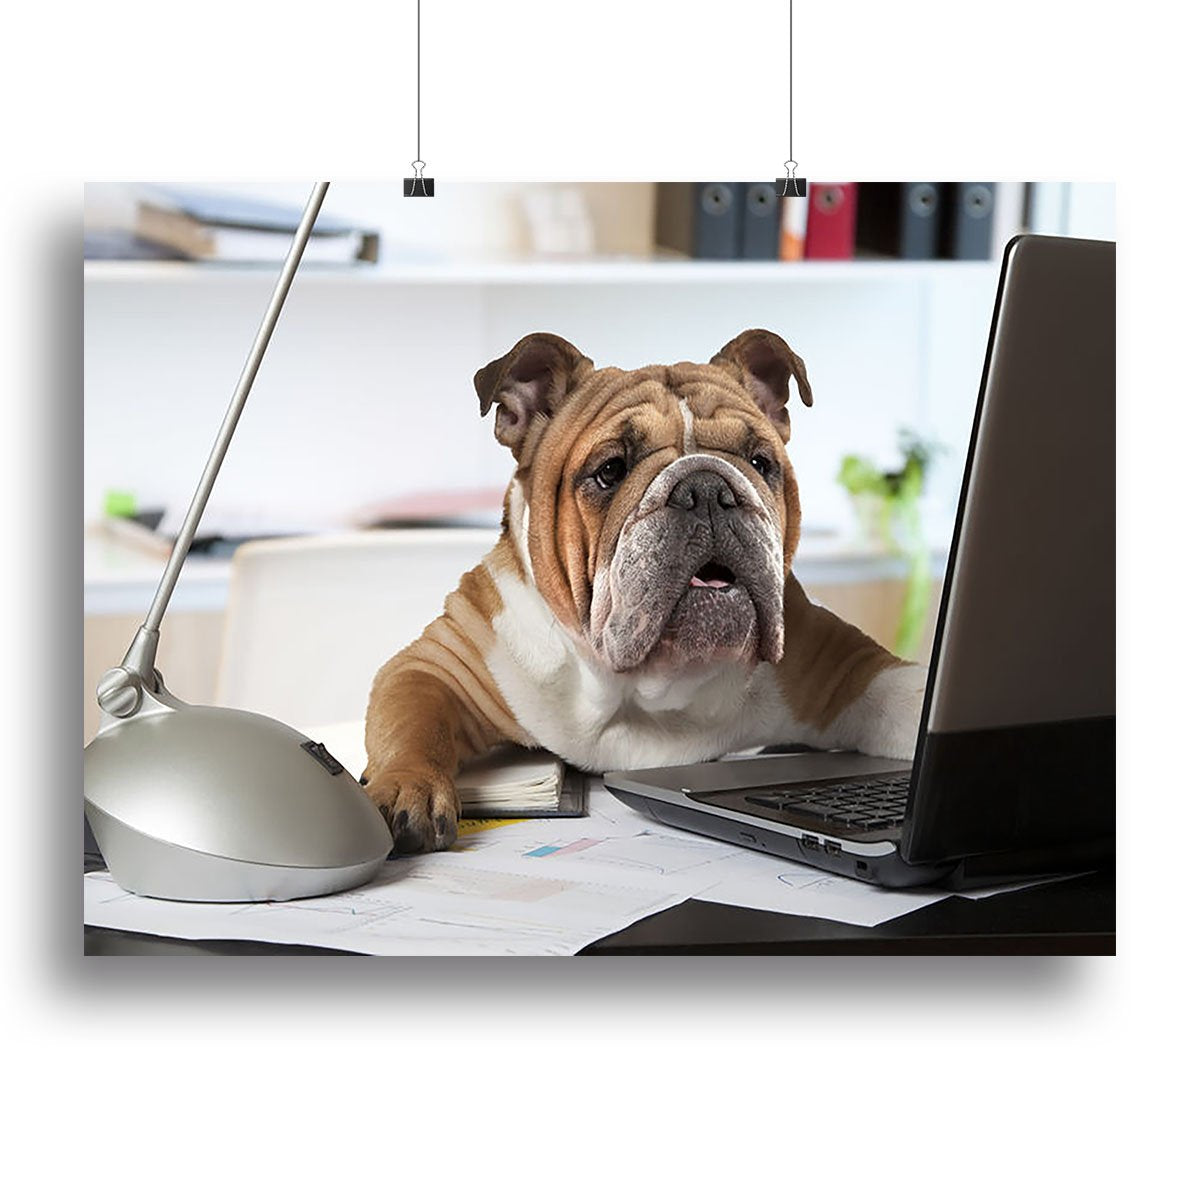 English Bulldog sitting at a desk Canvas Print or Poster